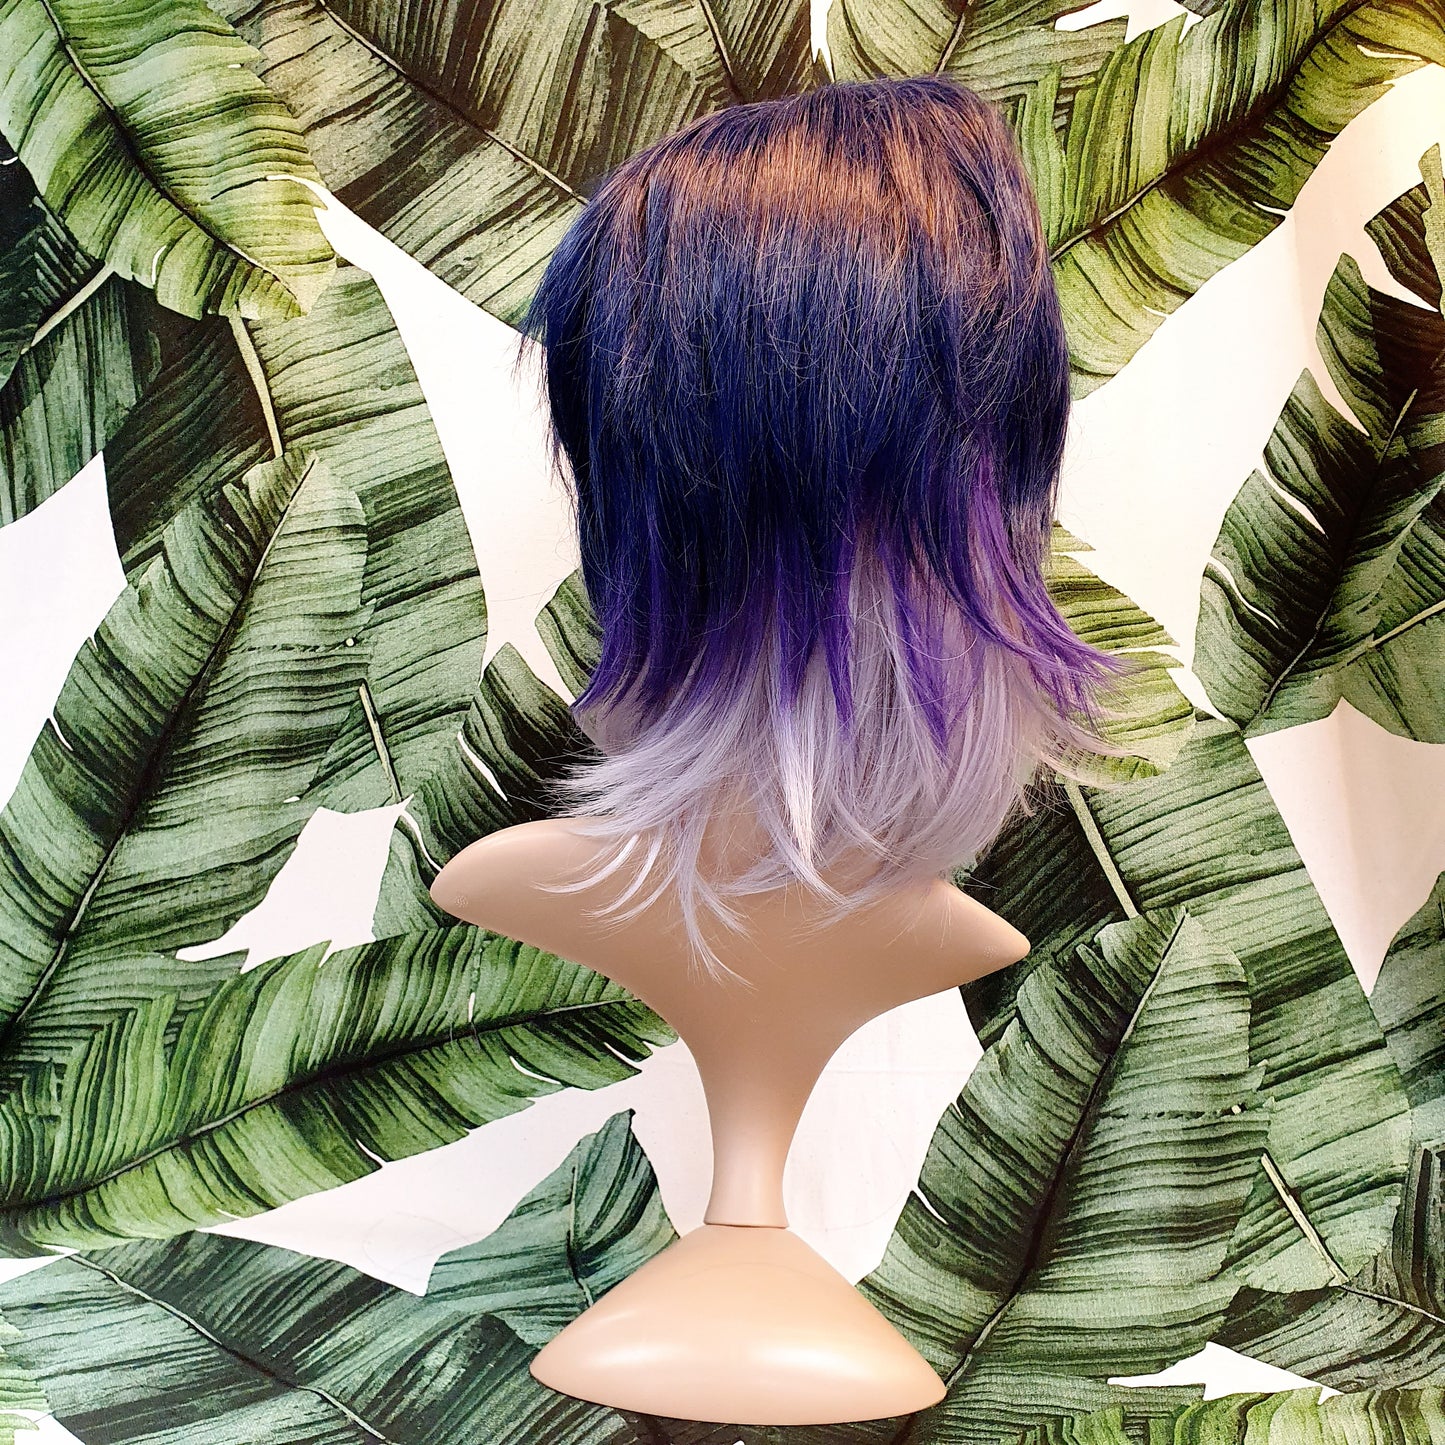 Vesipestävä peruukki, violetti-harmaa